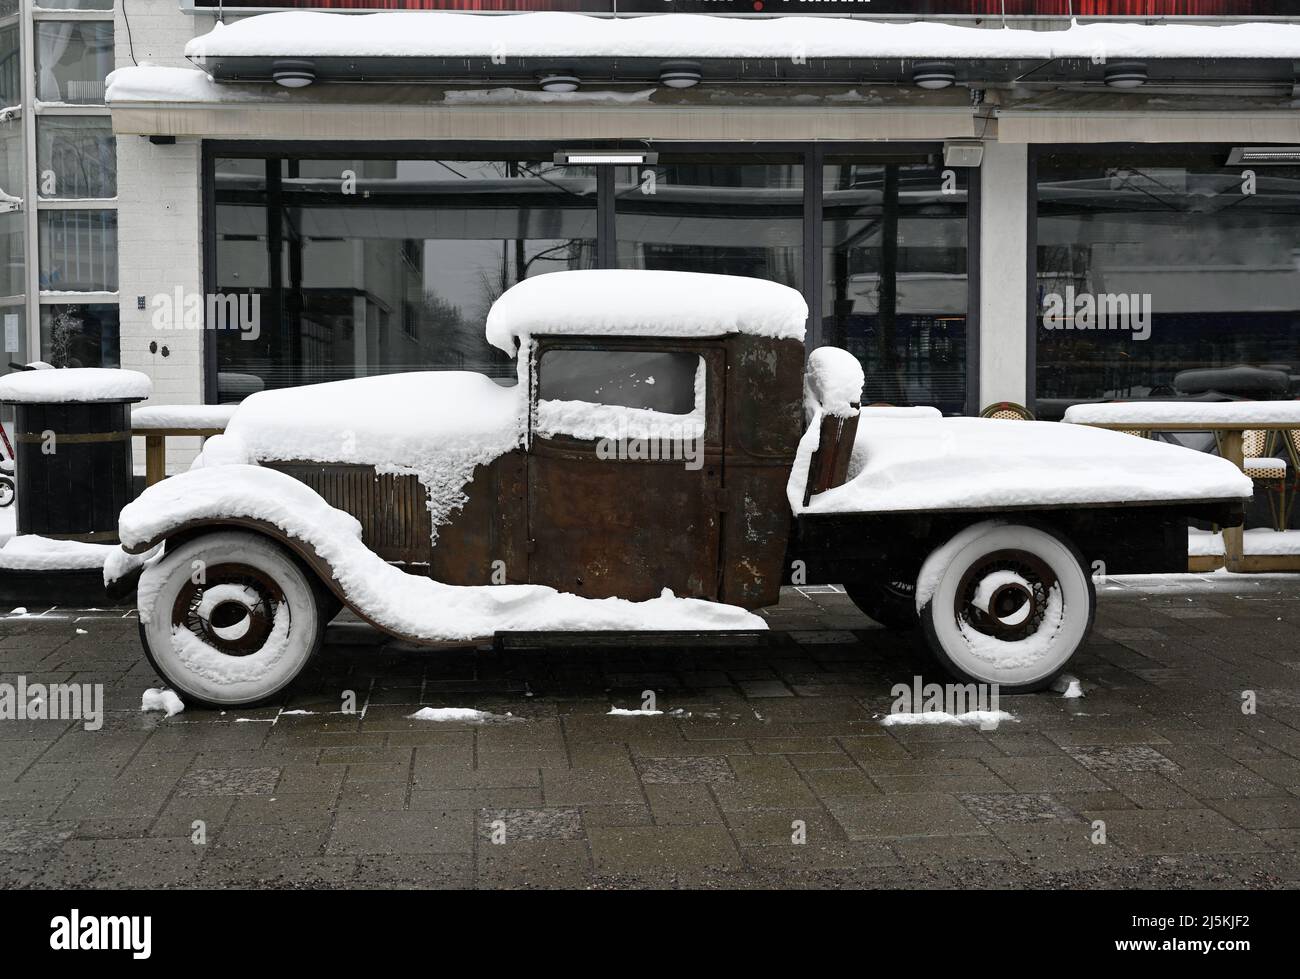 viejo coche retro oxidado cubierto de nieve al aire libre Foto de stock